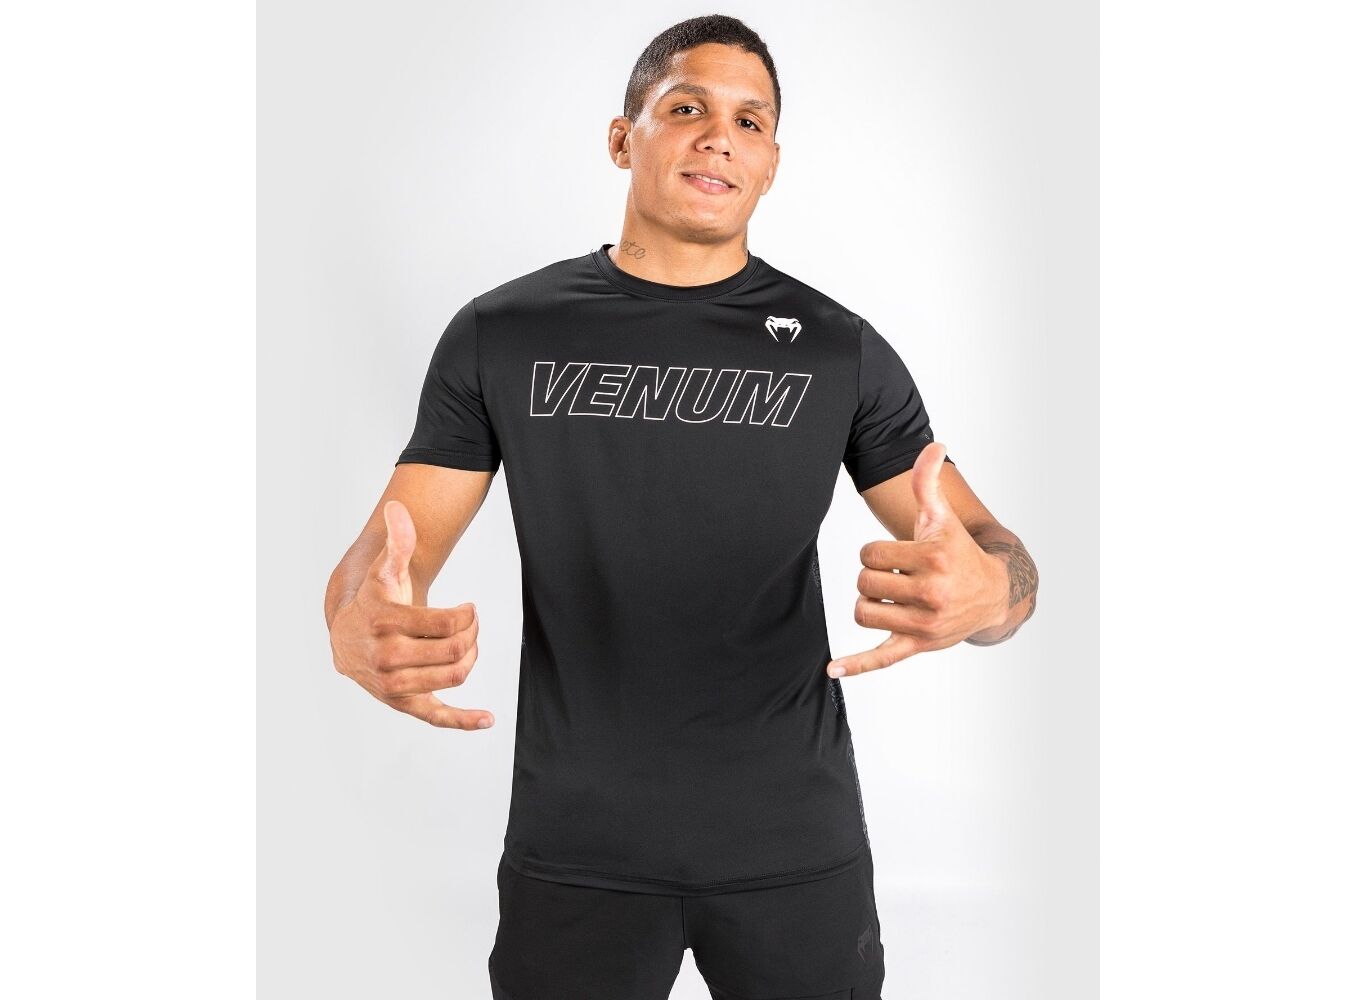 Vêtements :: T-Shirts et Polos :: Dry Tech :: Venum Classic Evo Dry Tech  T-Shirt - Black/White - S - Combat Sport best MMA Shop in Switzerland